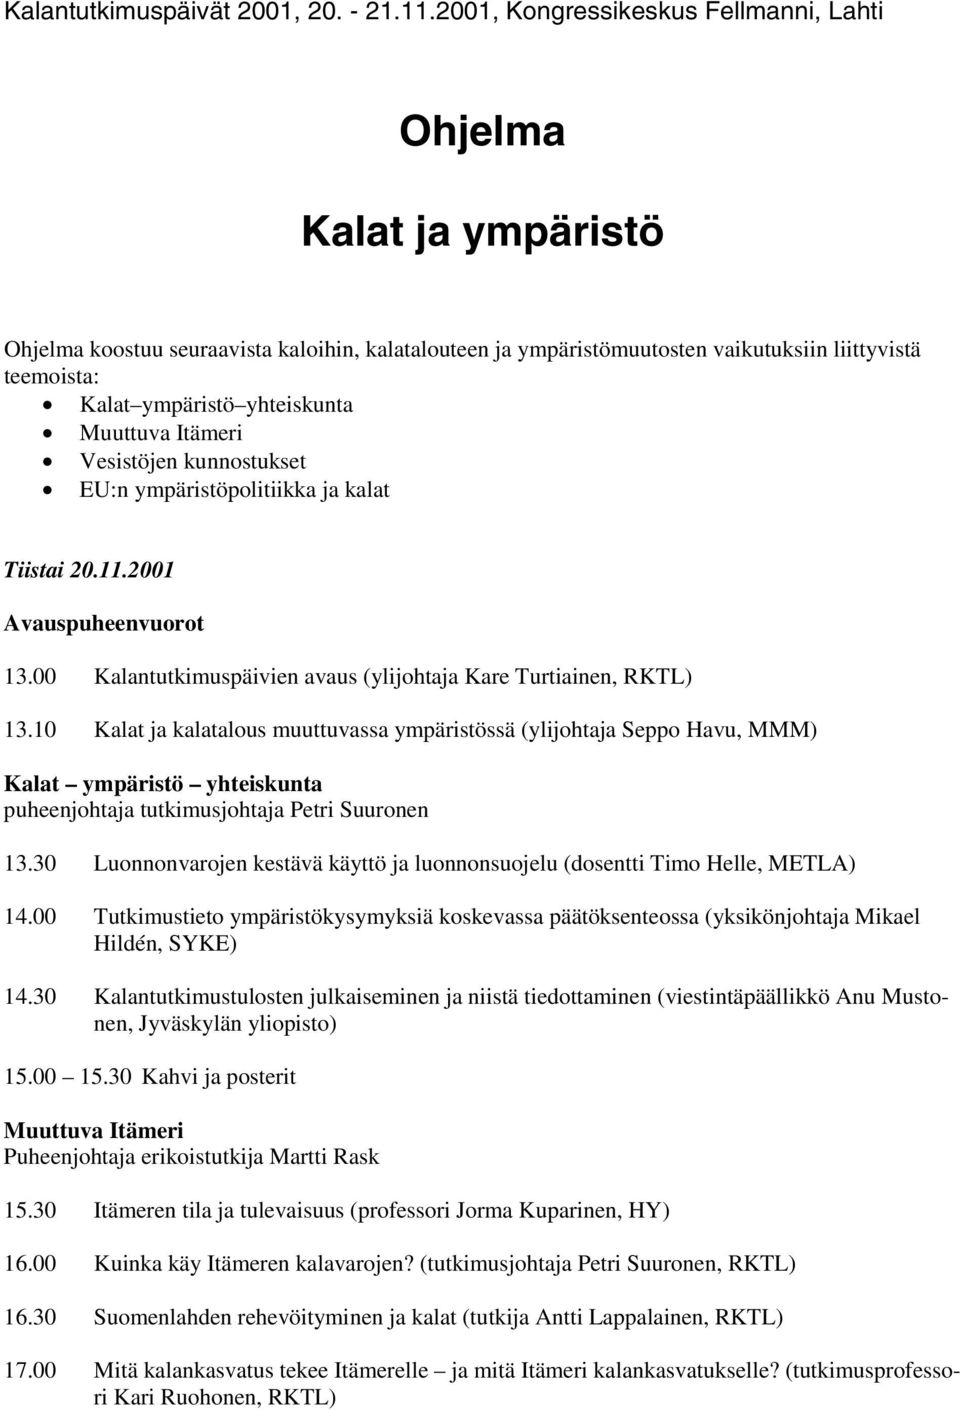 yhteiskunta Muuttuva Itämeri Vesistöjen kunnostukset EU:n ympäristöpolitiikka ja kalat Tiistai 20.11.2001 Avauspuheenvuorot 13.00 Kalantutkimuspäivien avaus (ylijohtaja Kare Turtiainen, RKTL) 13.